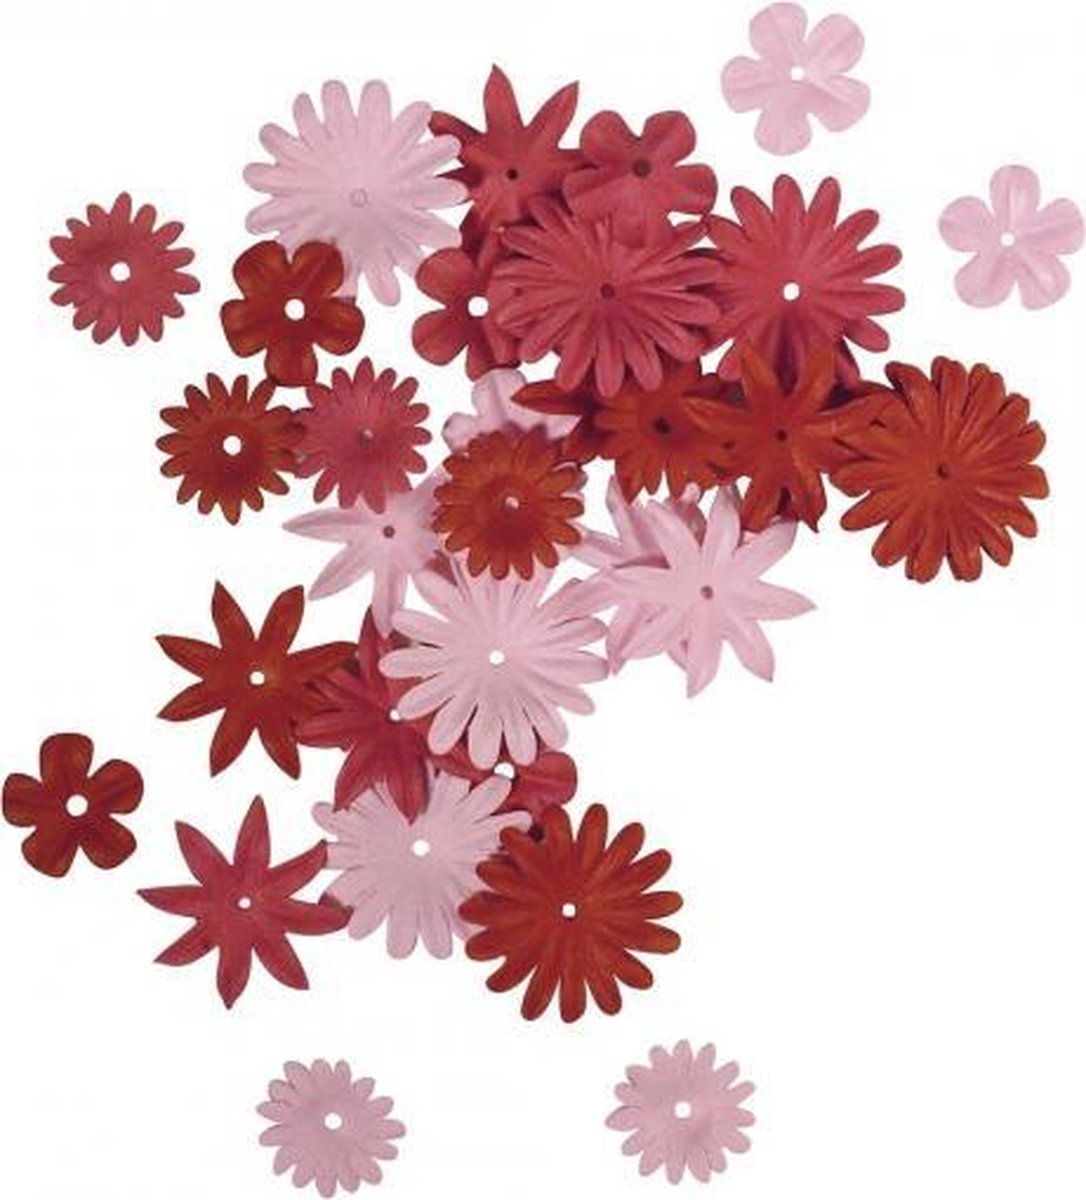 Papieren knutsel bloemen 36 stuks rood/roze - hobby knutselen materialen